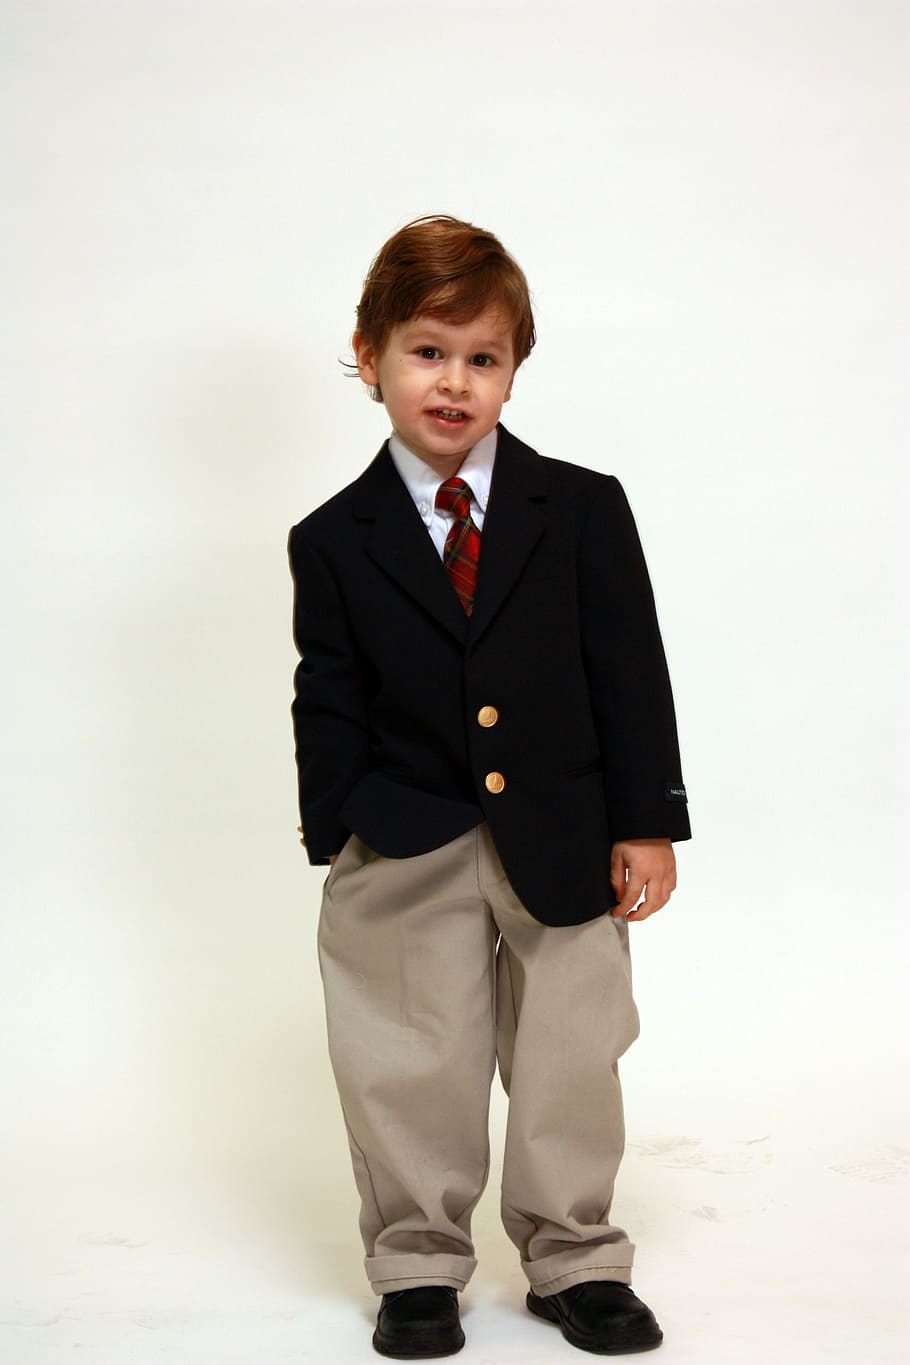 boy in suit jacket standing near white wall, portrait, formal